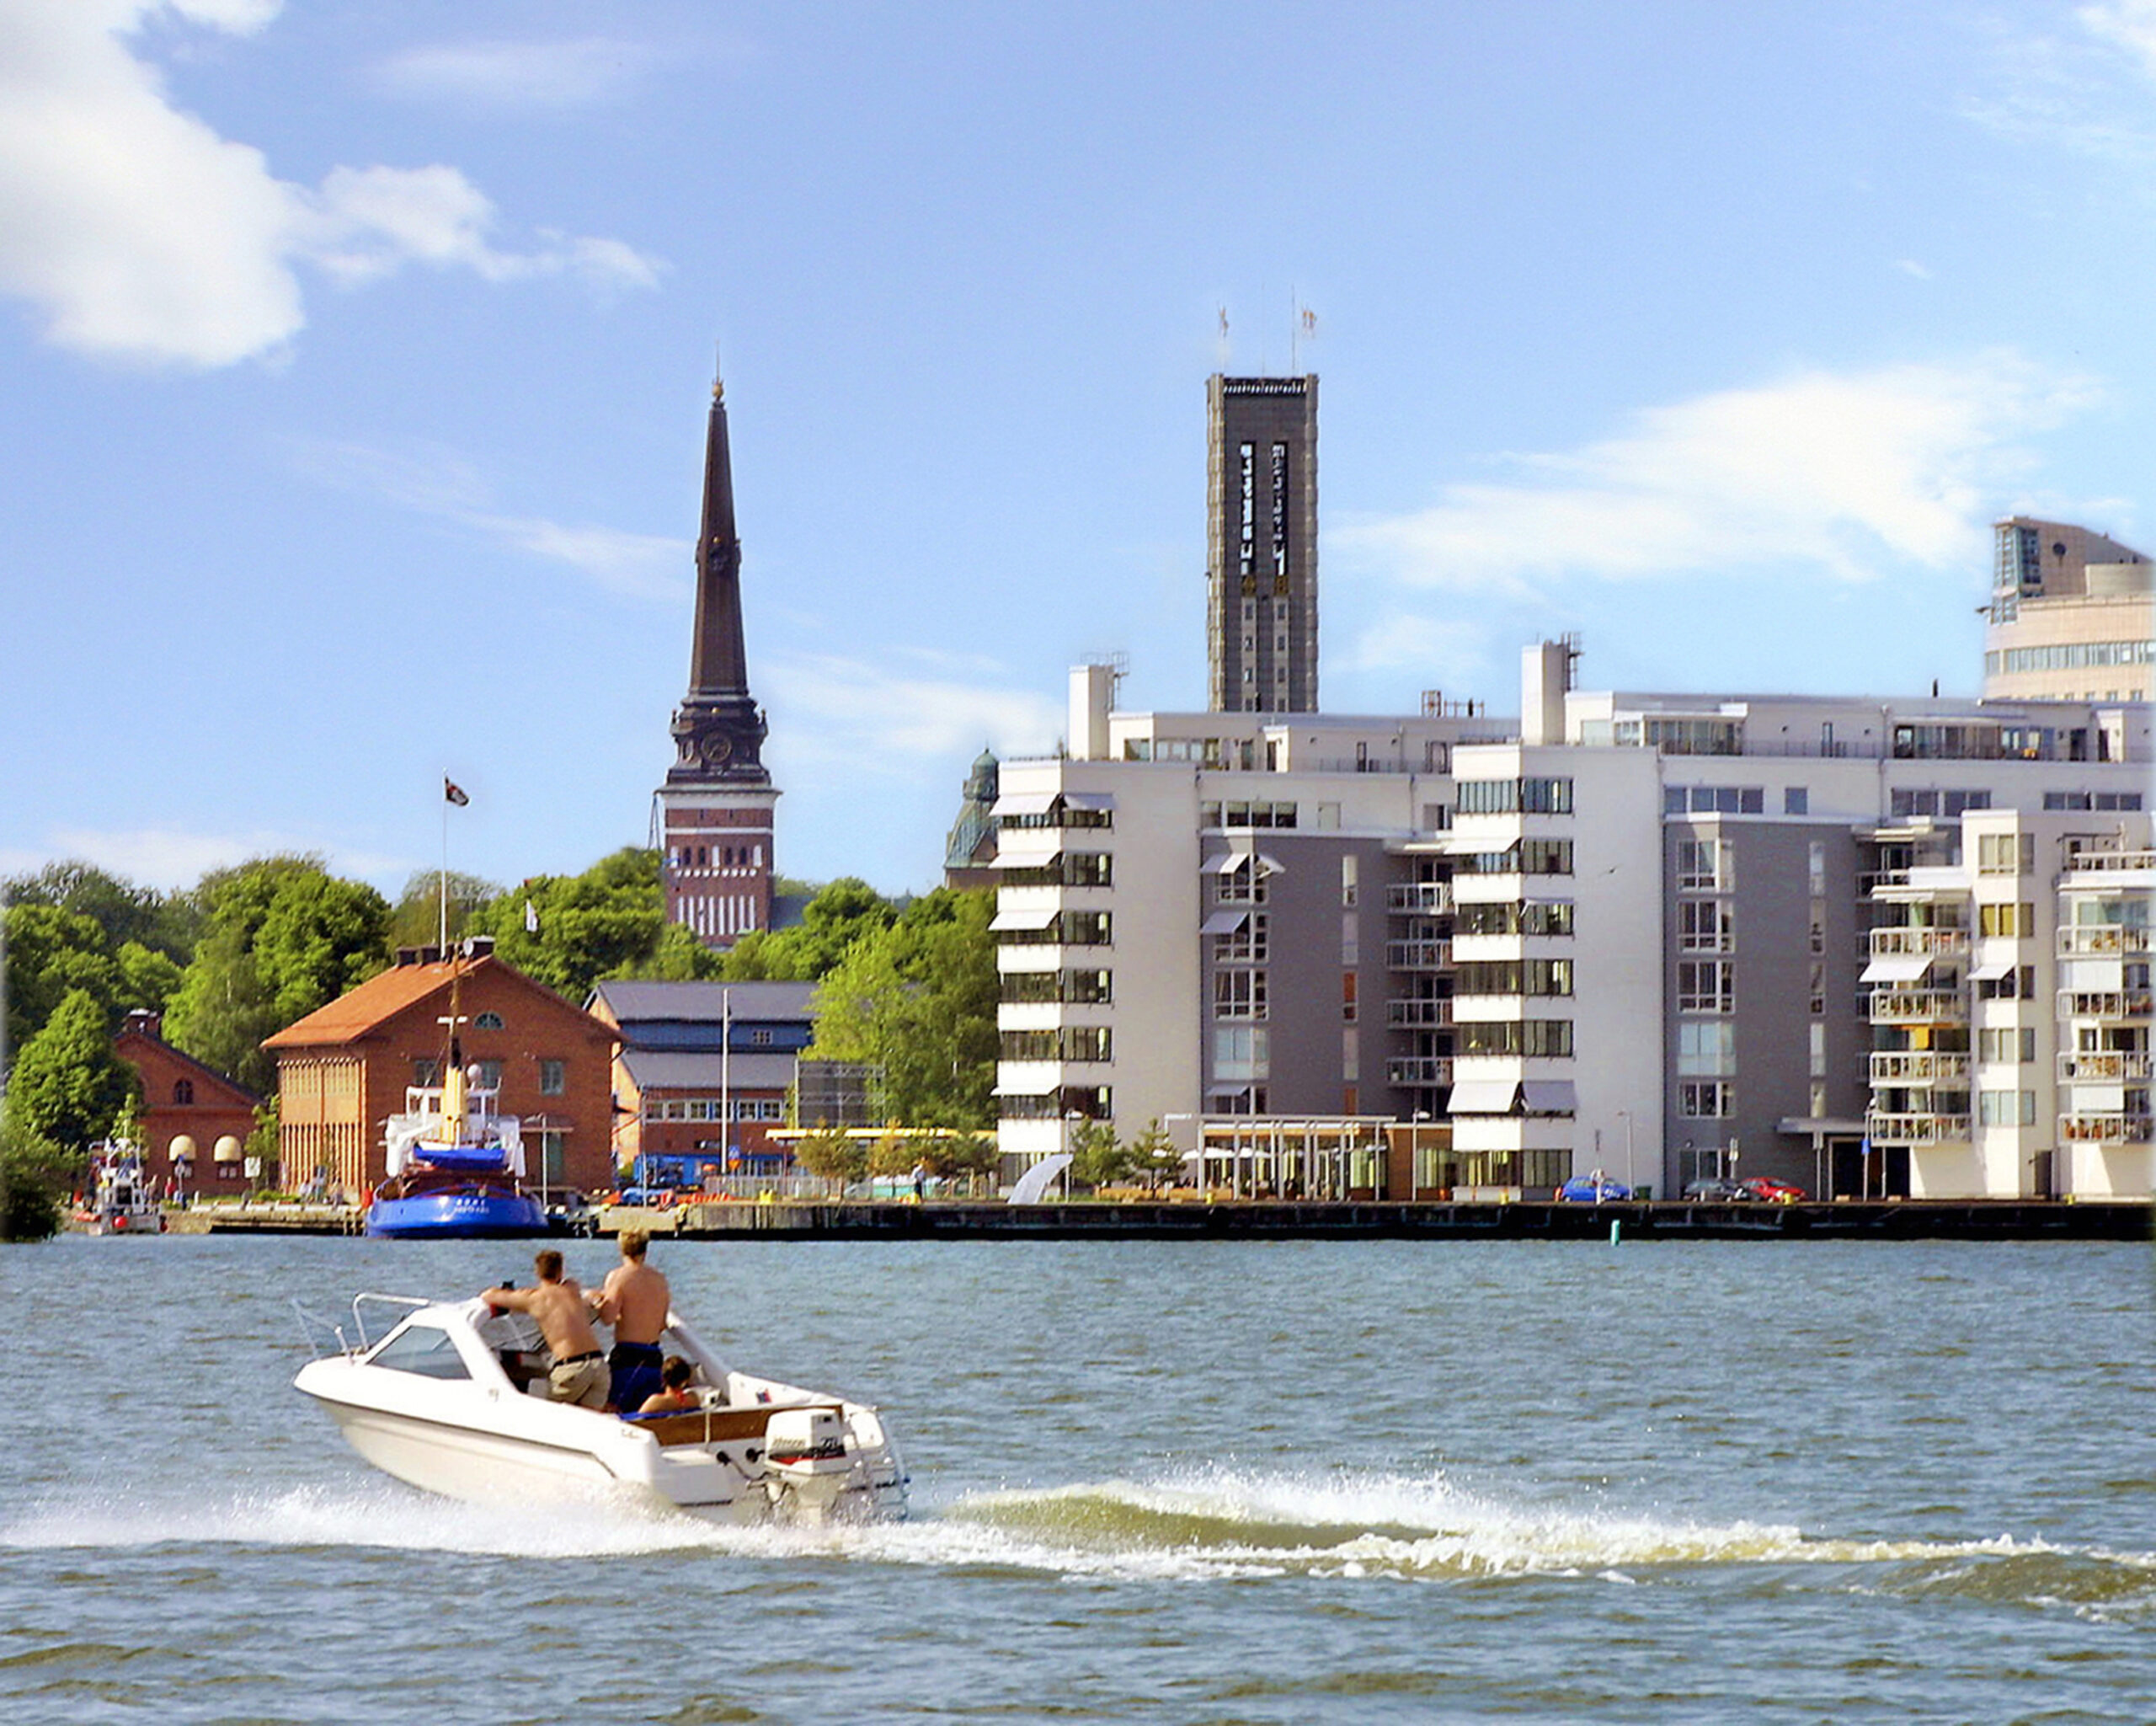 Västerås sett från vattnet. En båt med två män och en kyrka i bakgrunden.